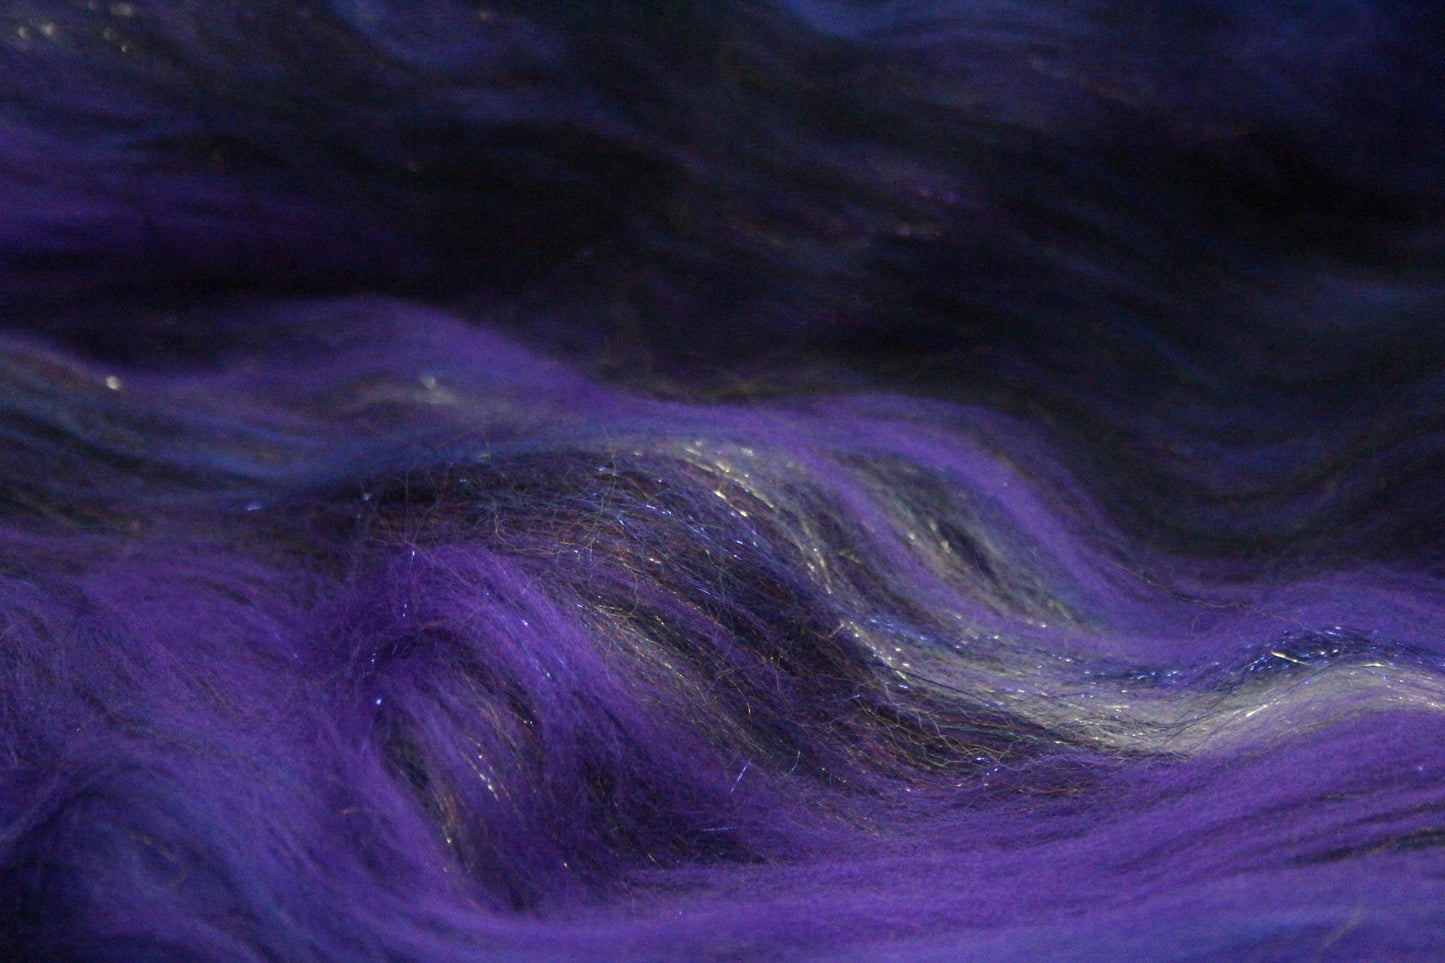 Merino Art Batt  - Purple  - 134 grams 4.7 oz - Wool for felting, spinning and weaving